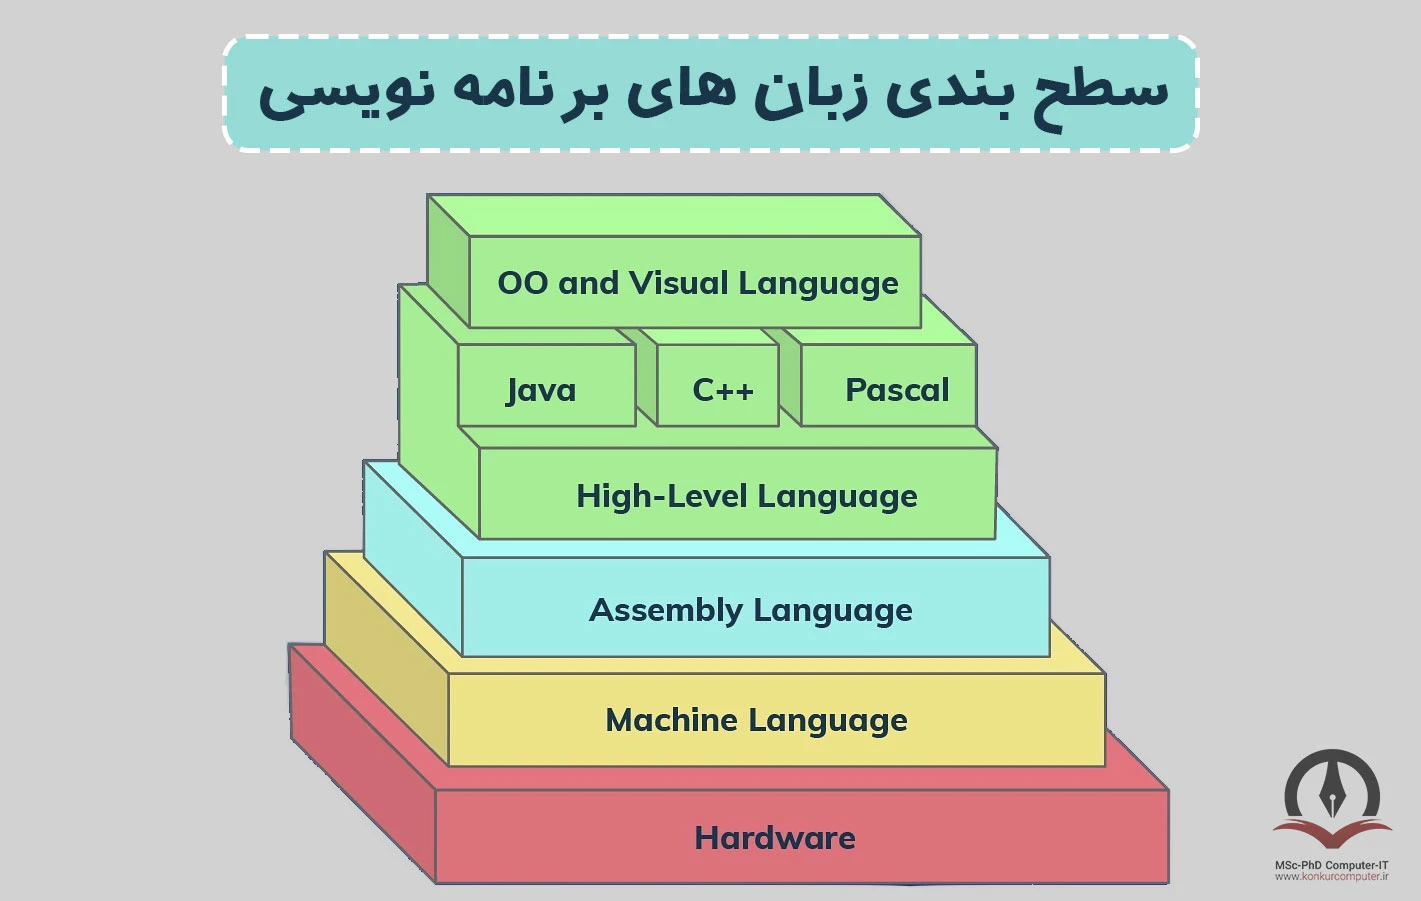 در این تصویر سطح بندی زبان های برنامه نویسی شرح داده شده است.